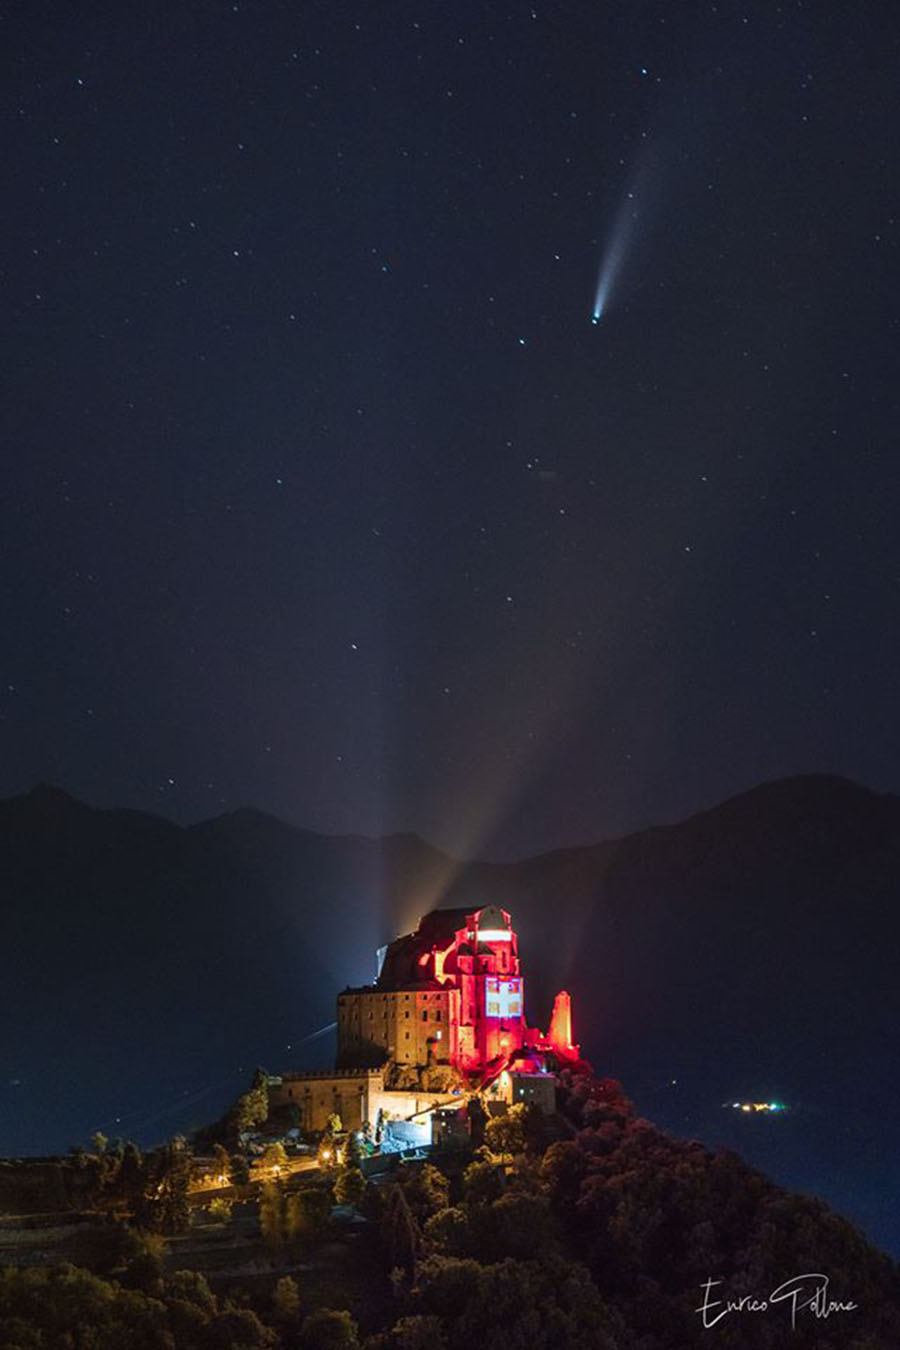 La Sacra illuminata dalla bandiera del Piemonte, e la cometa Neowise a farle compagnia (Enrico Pollone)